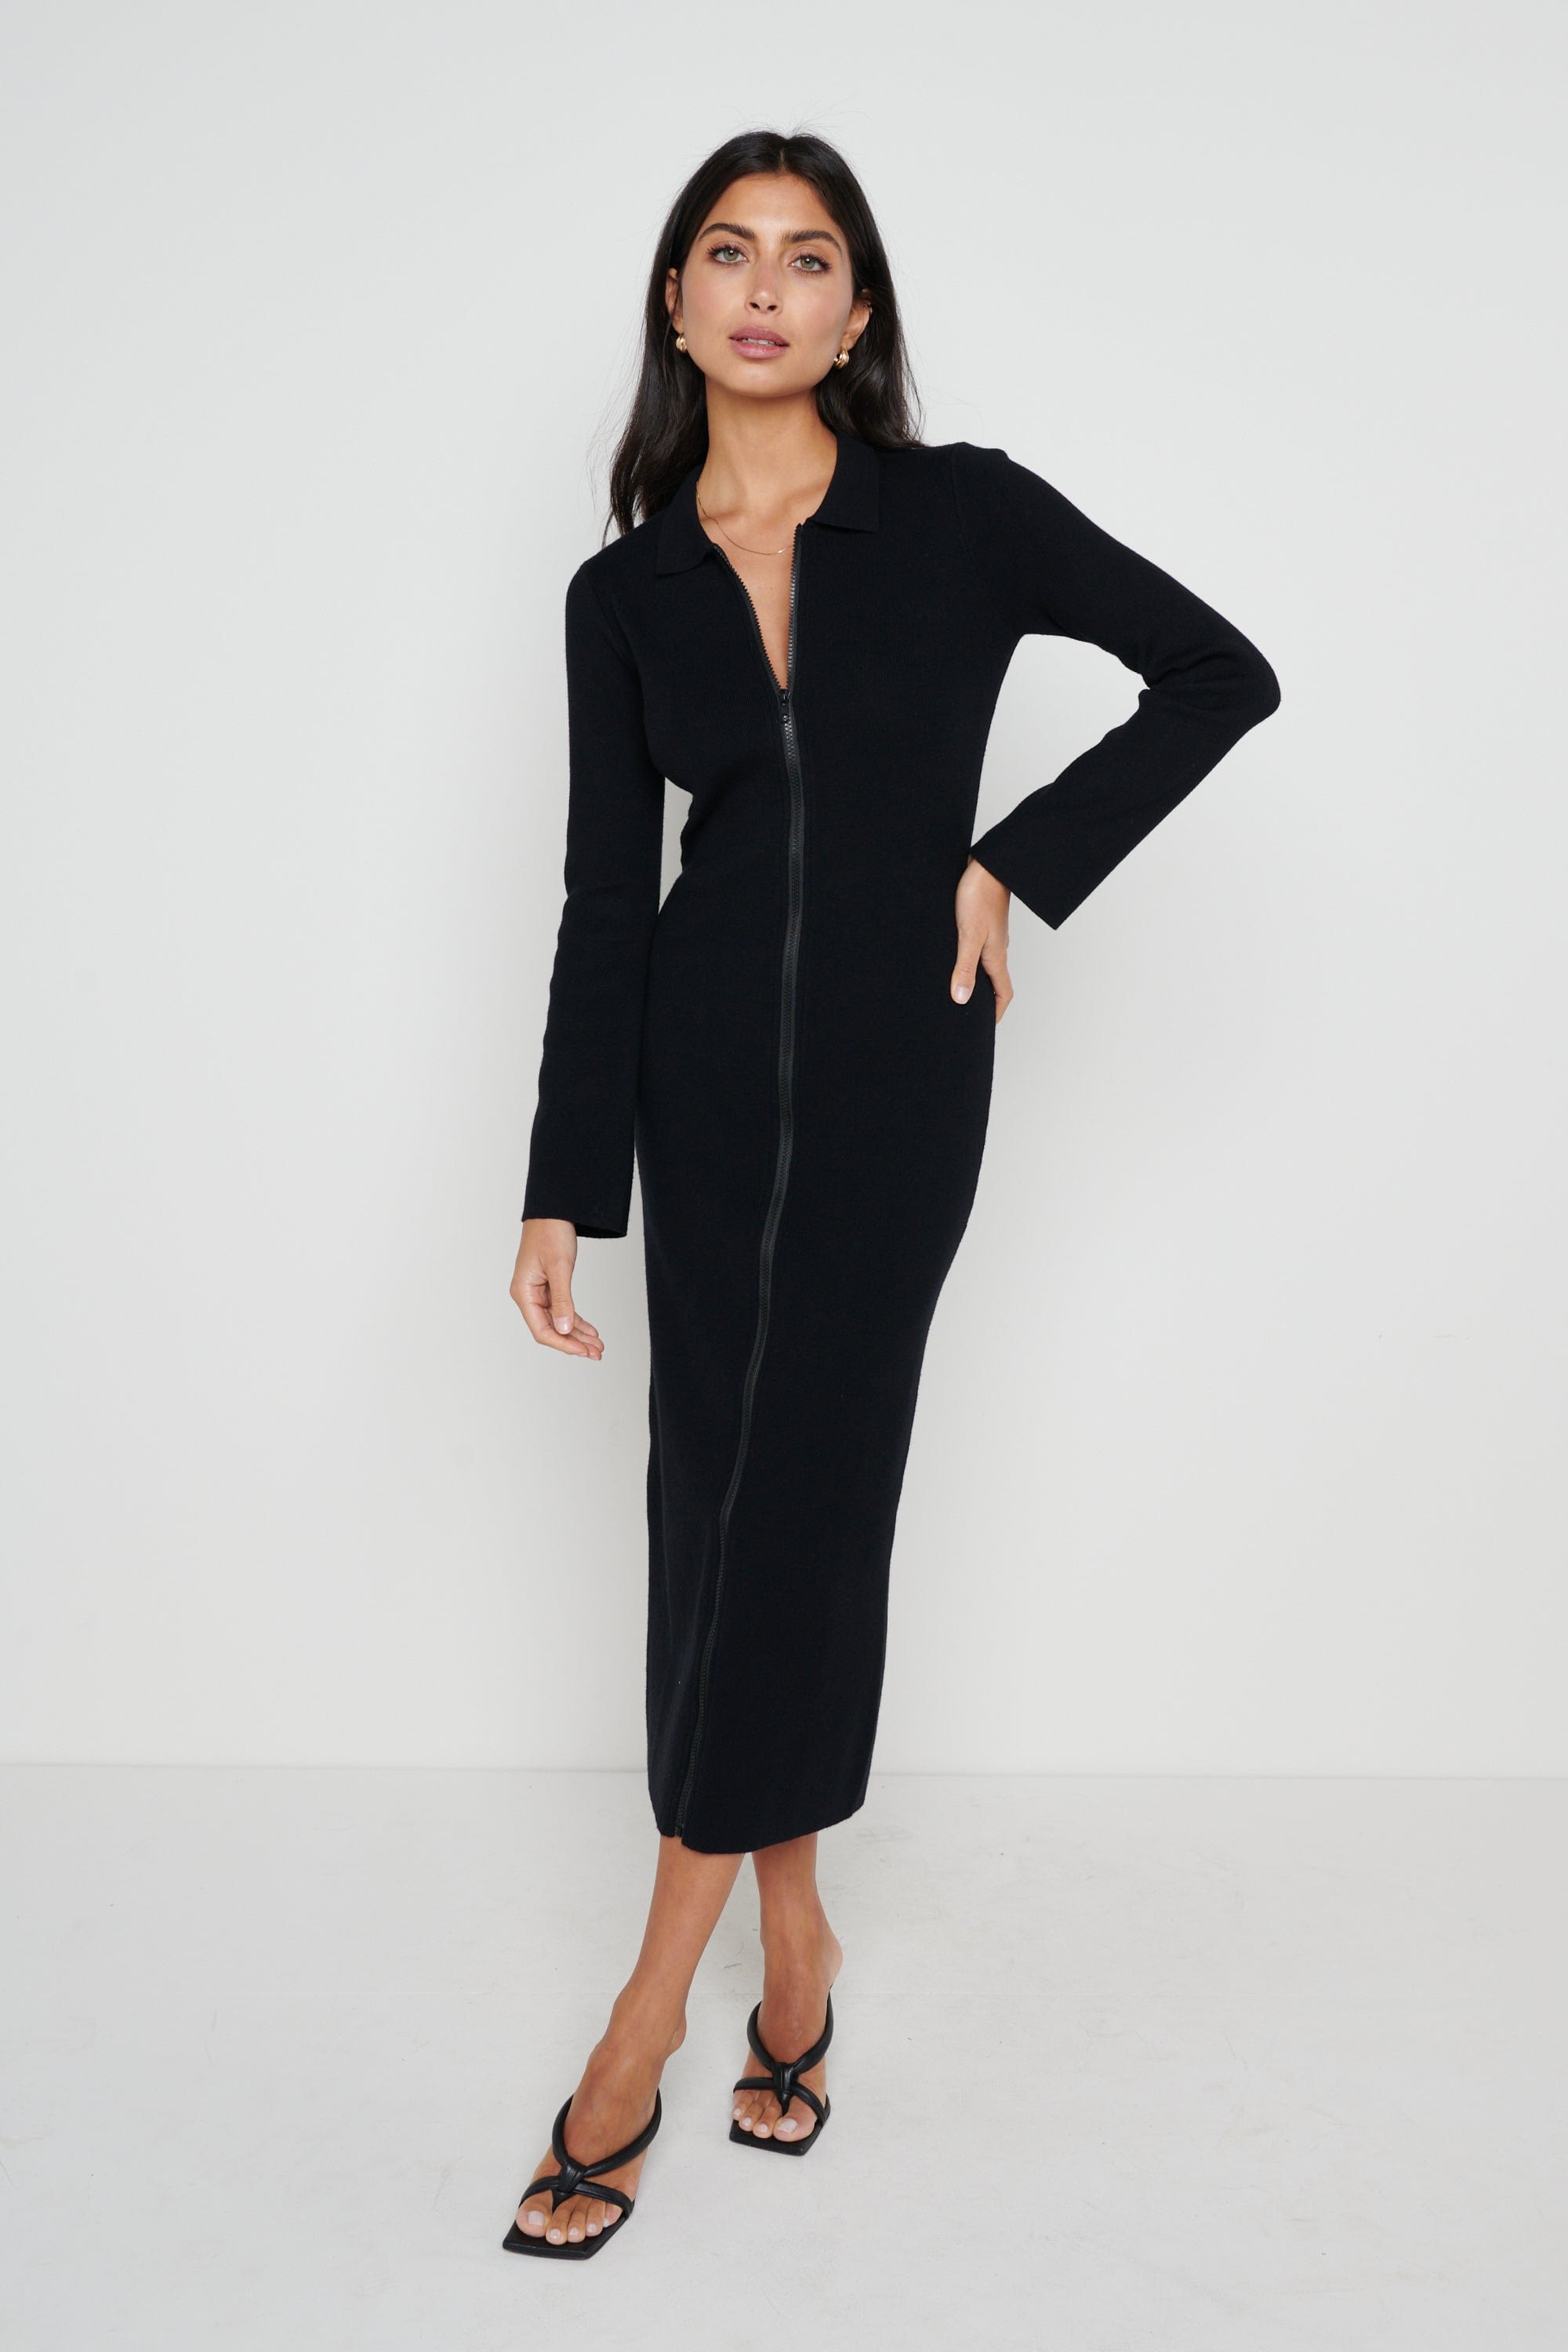 Savannah Knit Dress- Black – Pretty Lavish